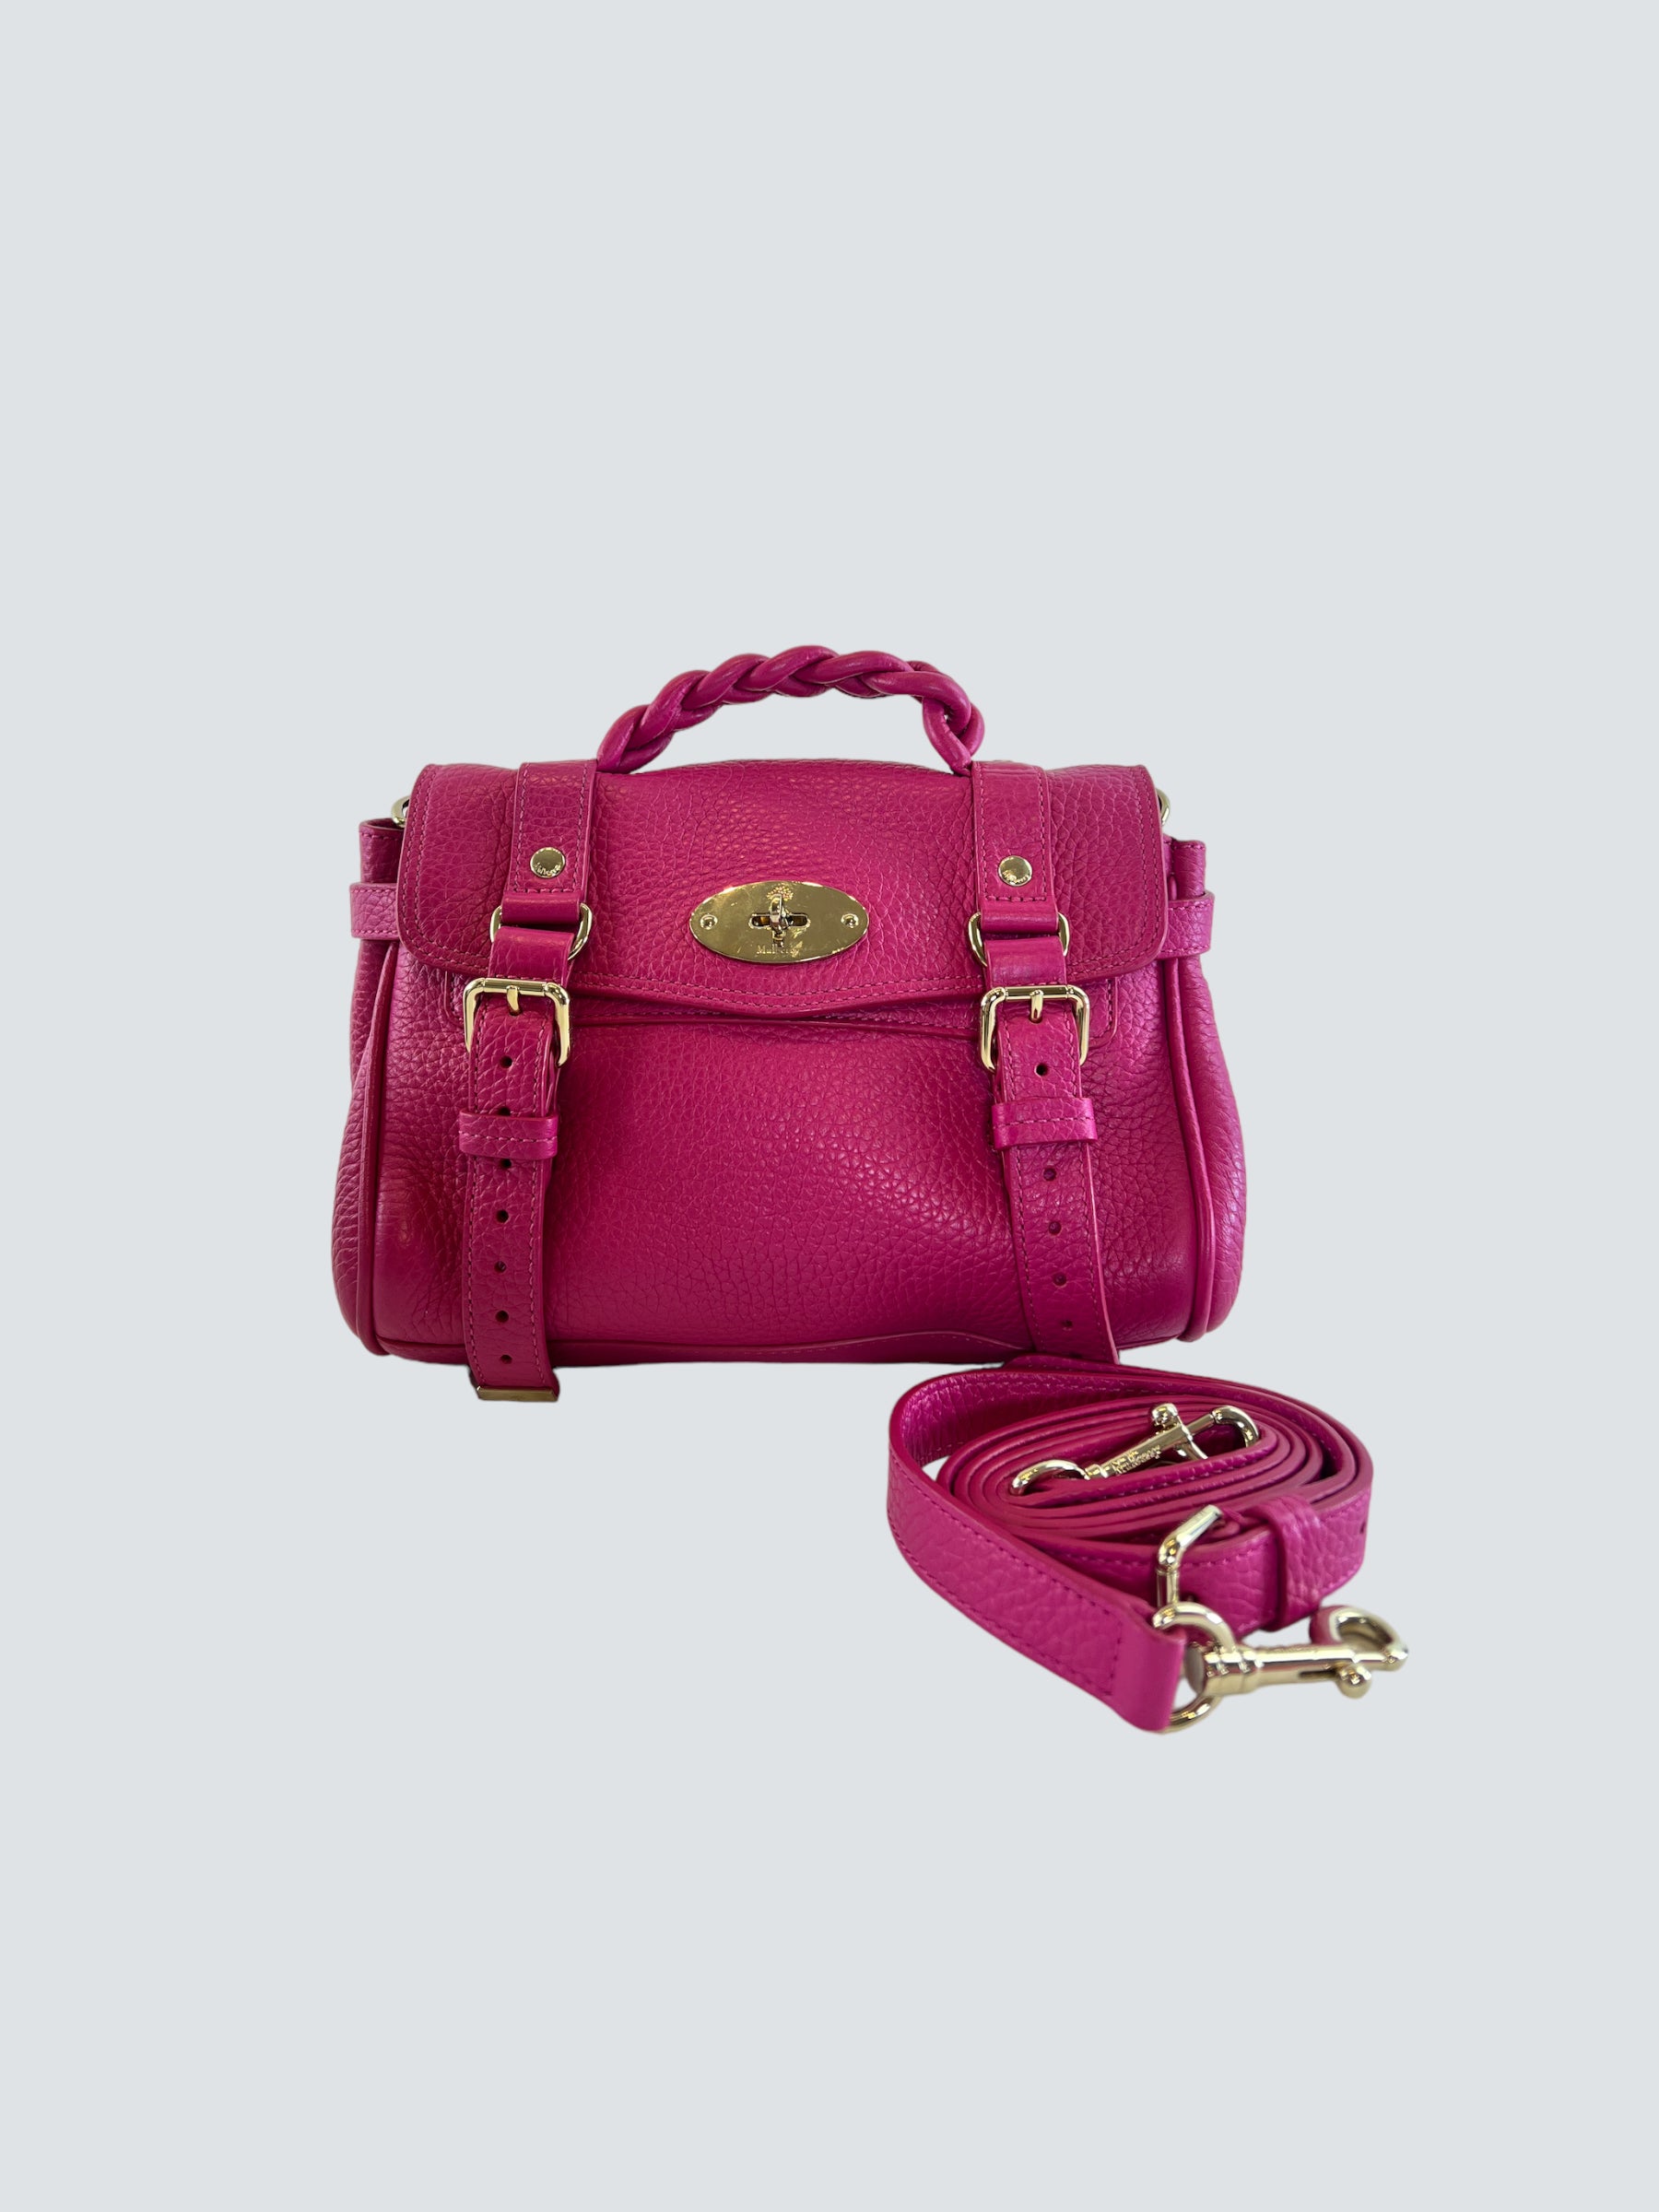 Harveys seatbelt bag Sophia Mulberry purple VGUC braid purse bag tote  satchel | eBay